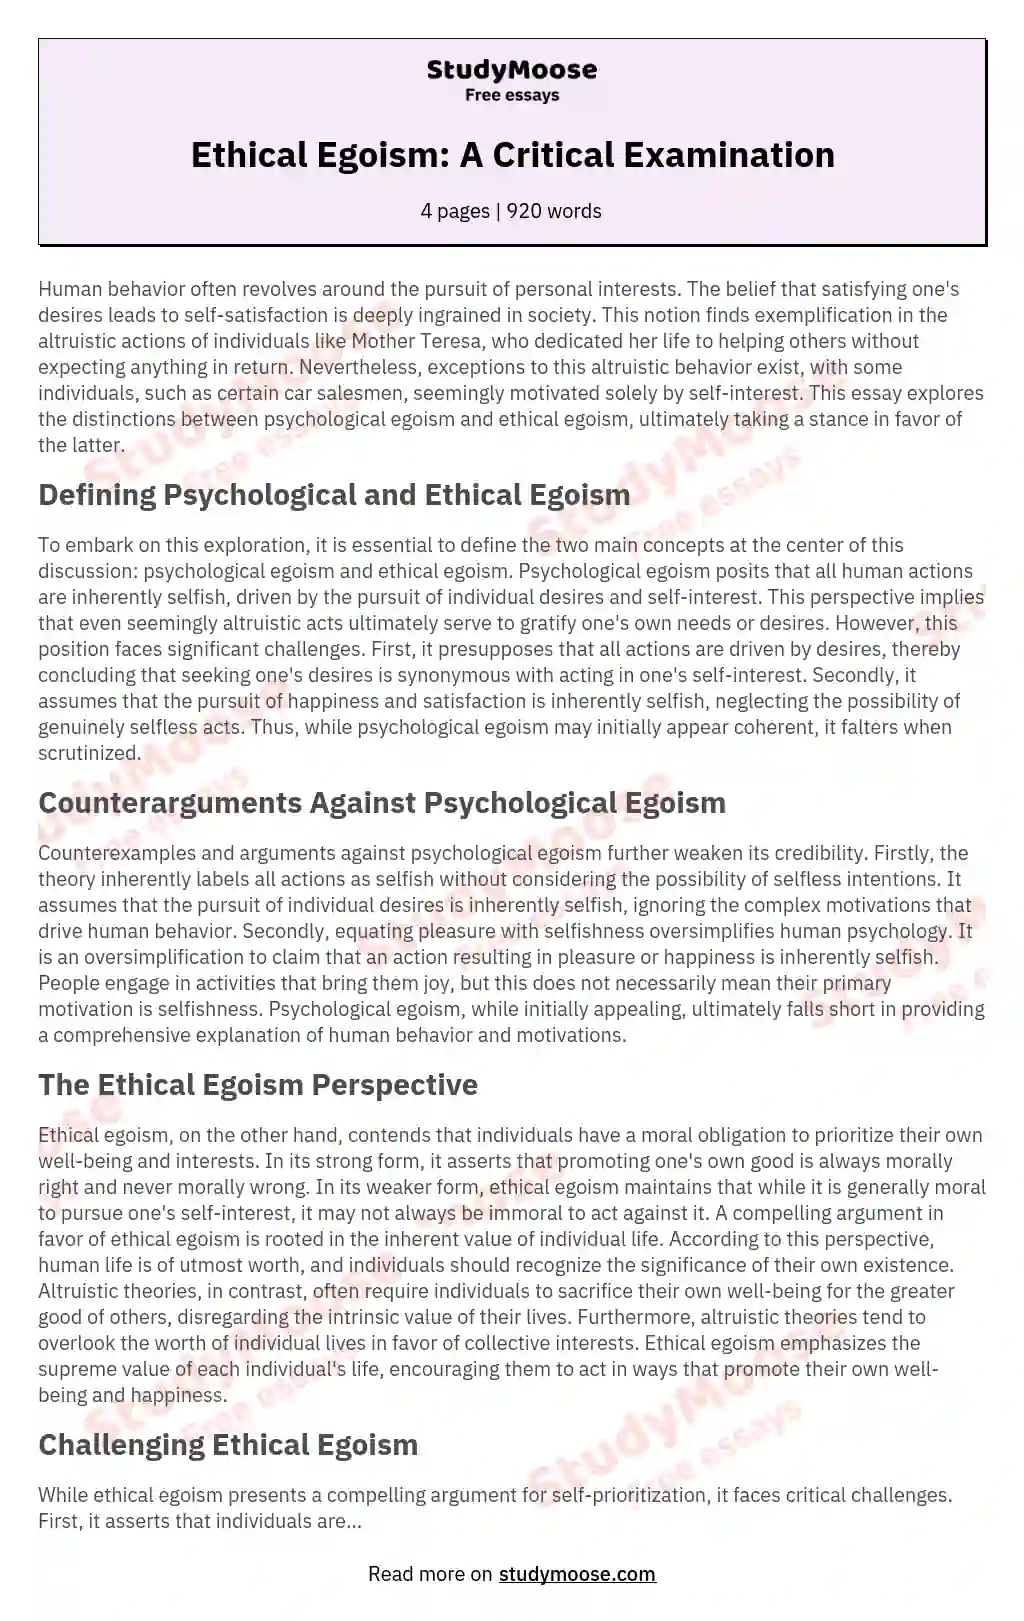 Psychological Egoism and Ethical Egoism